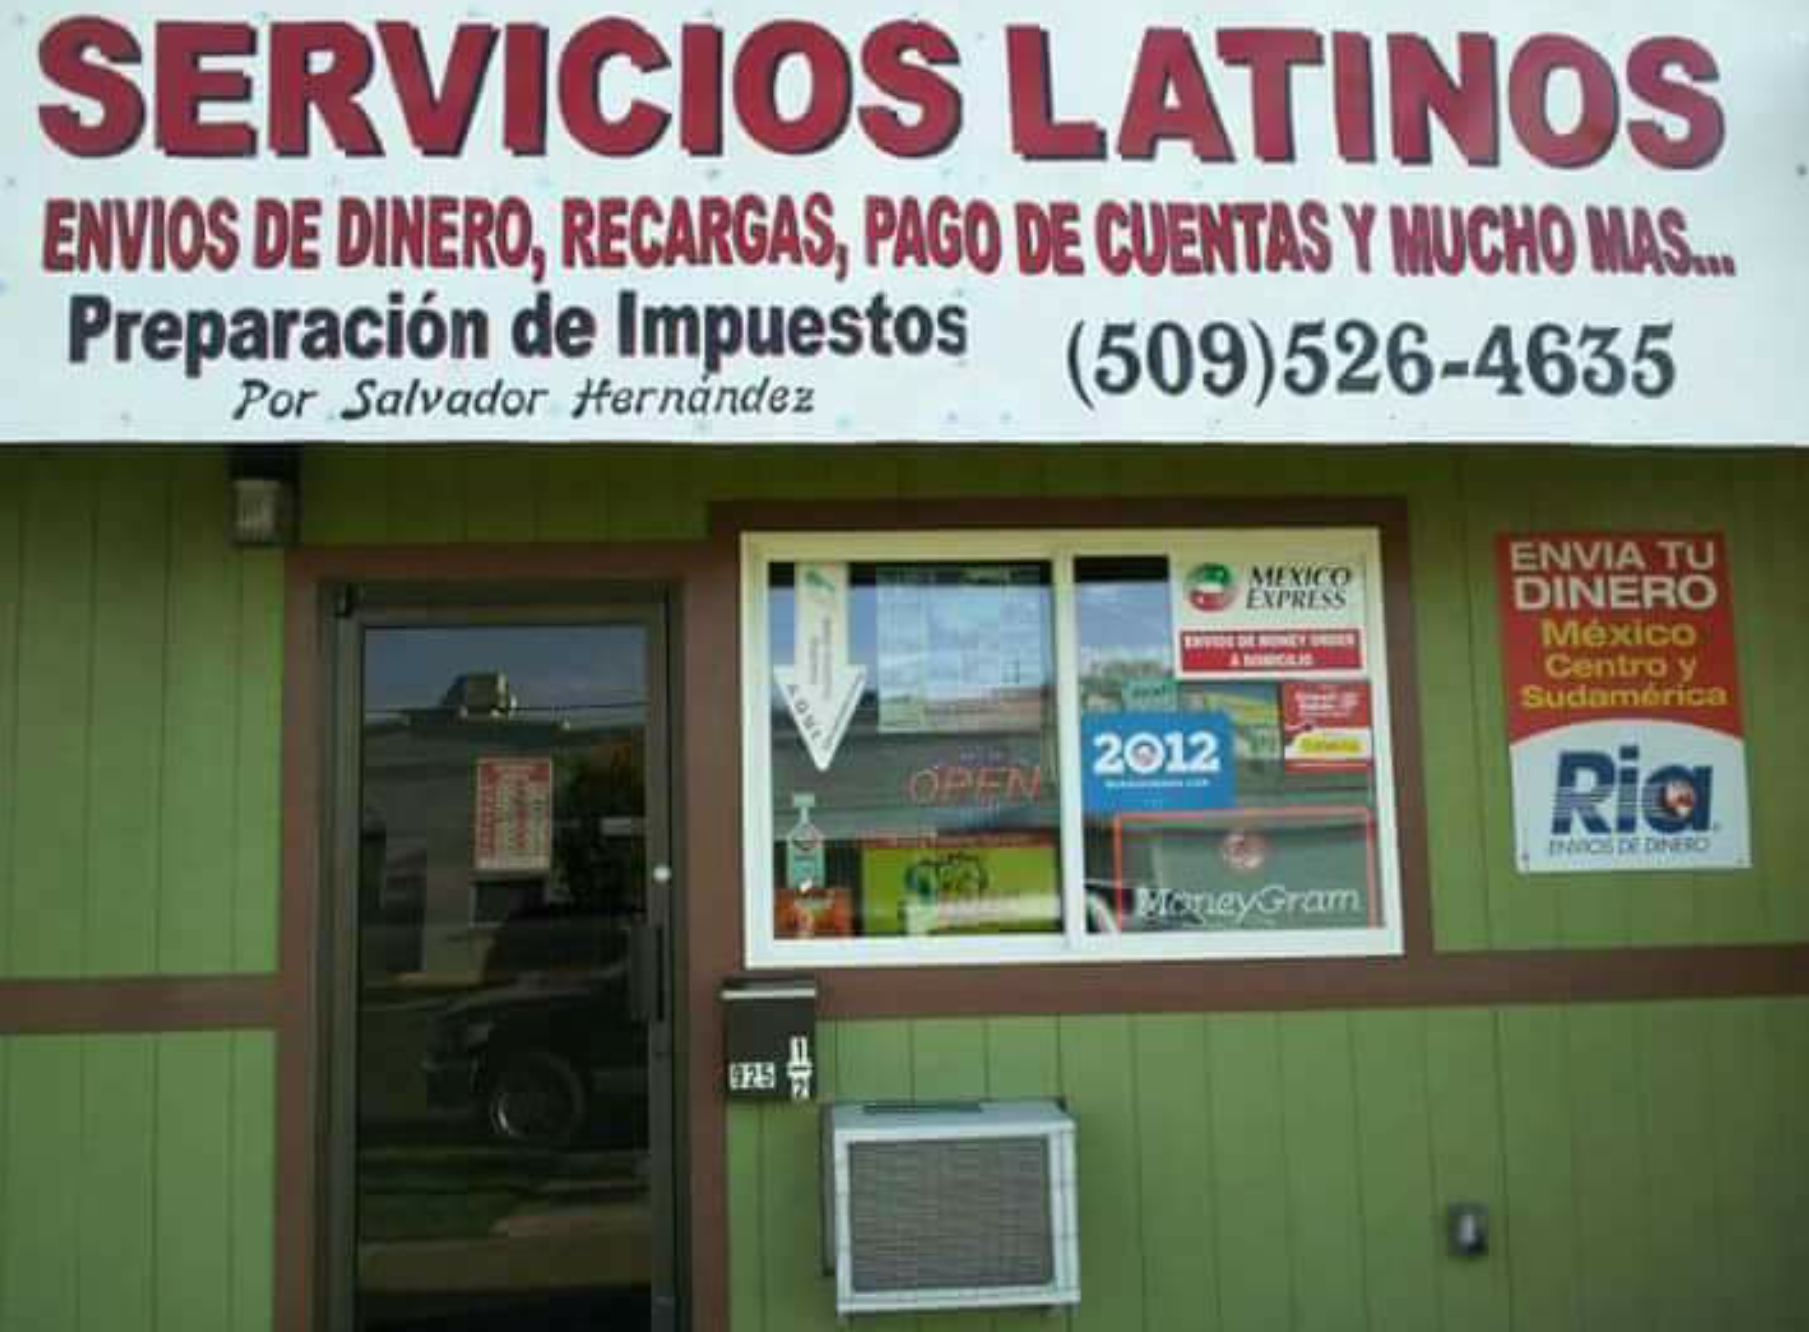 Servicios Latinos